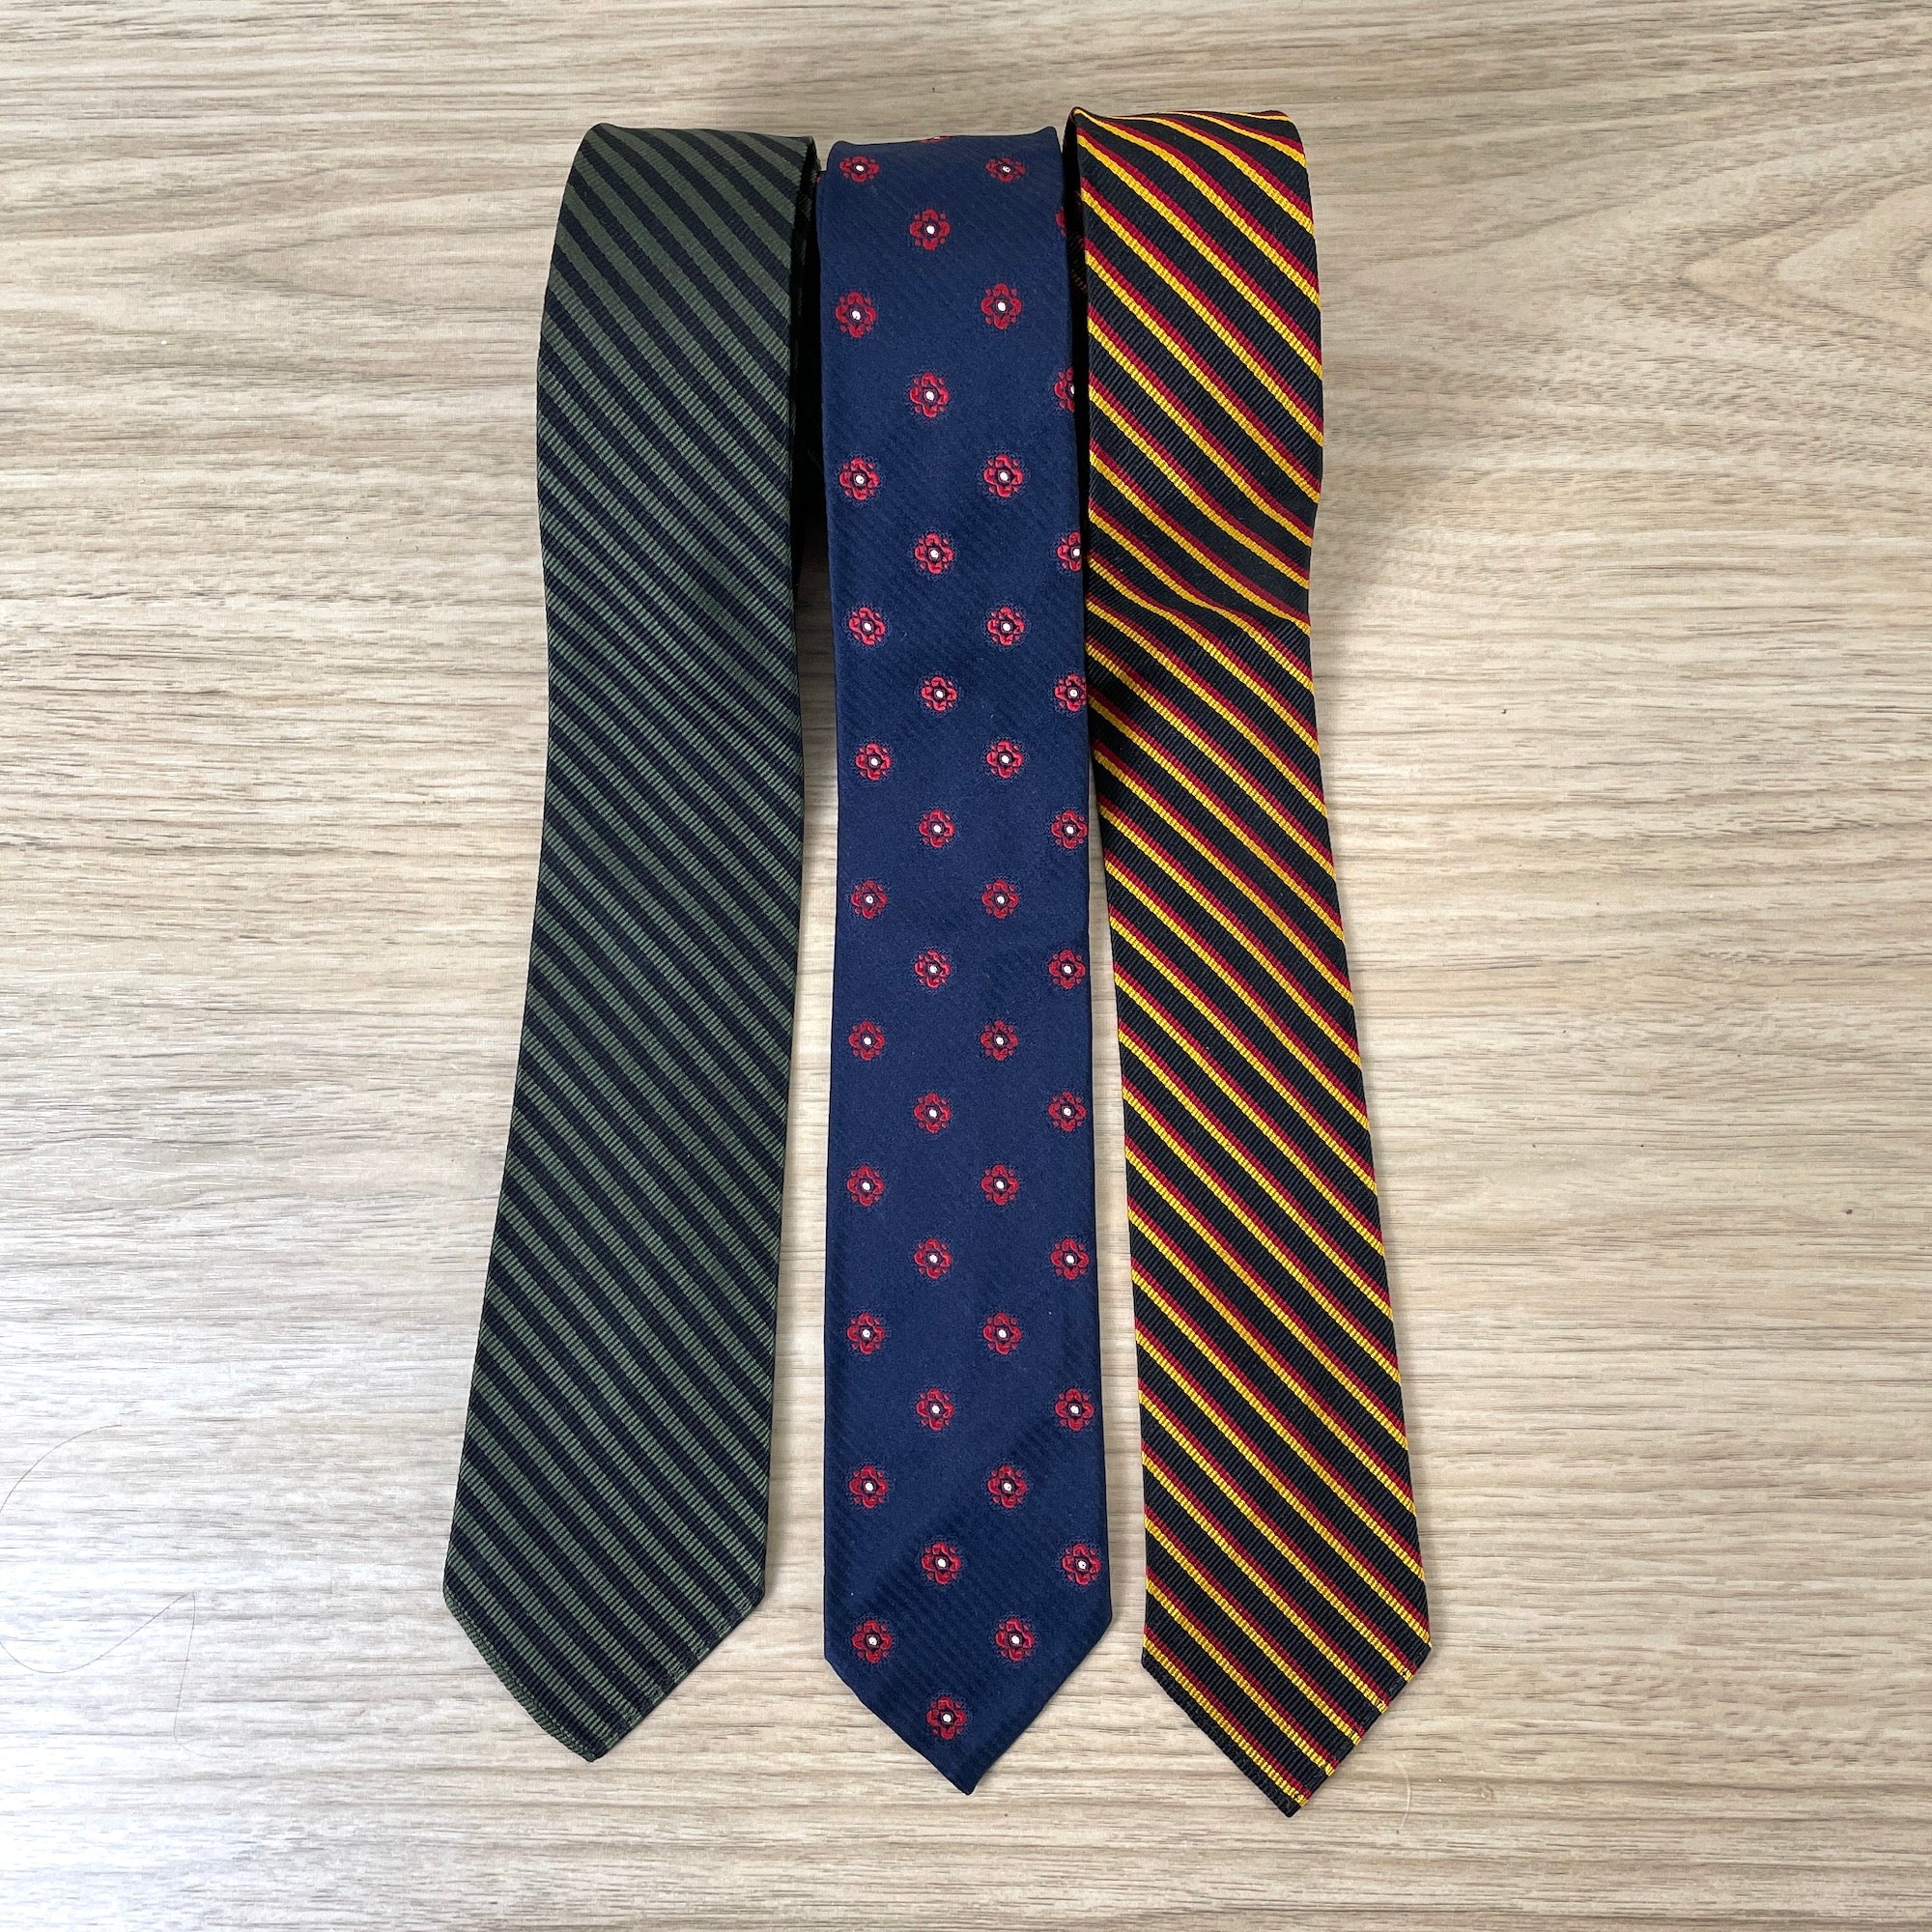 Rogers Peet Company silk neckties - 3 vintage narrow ties